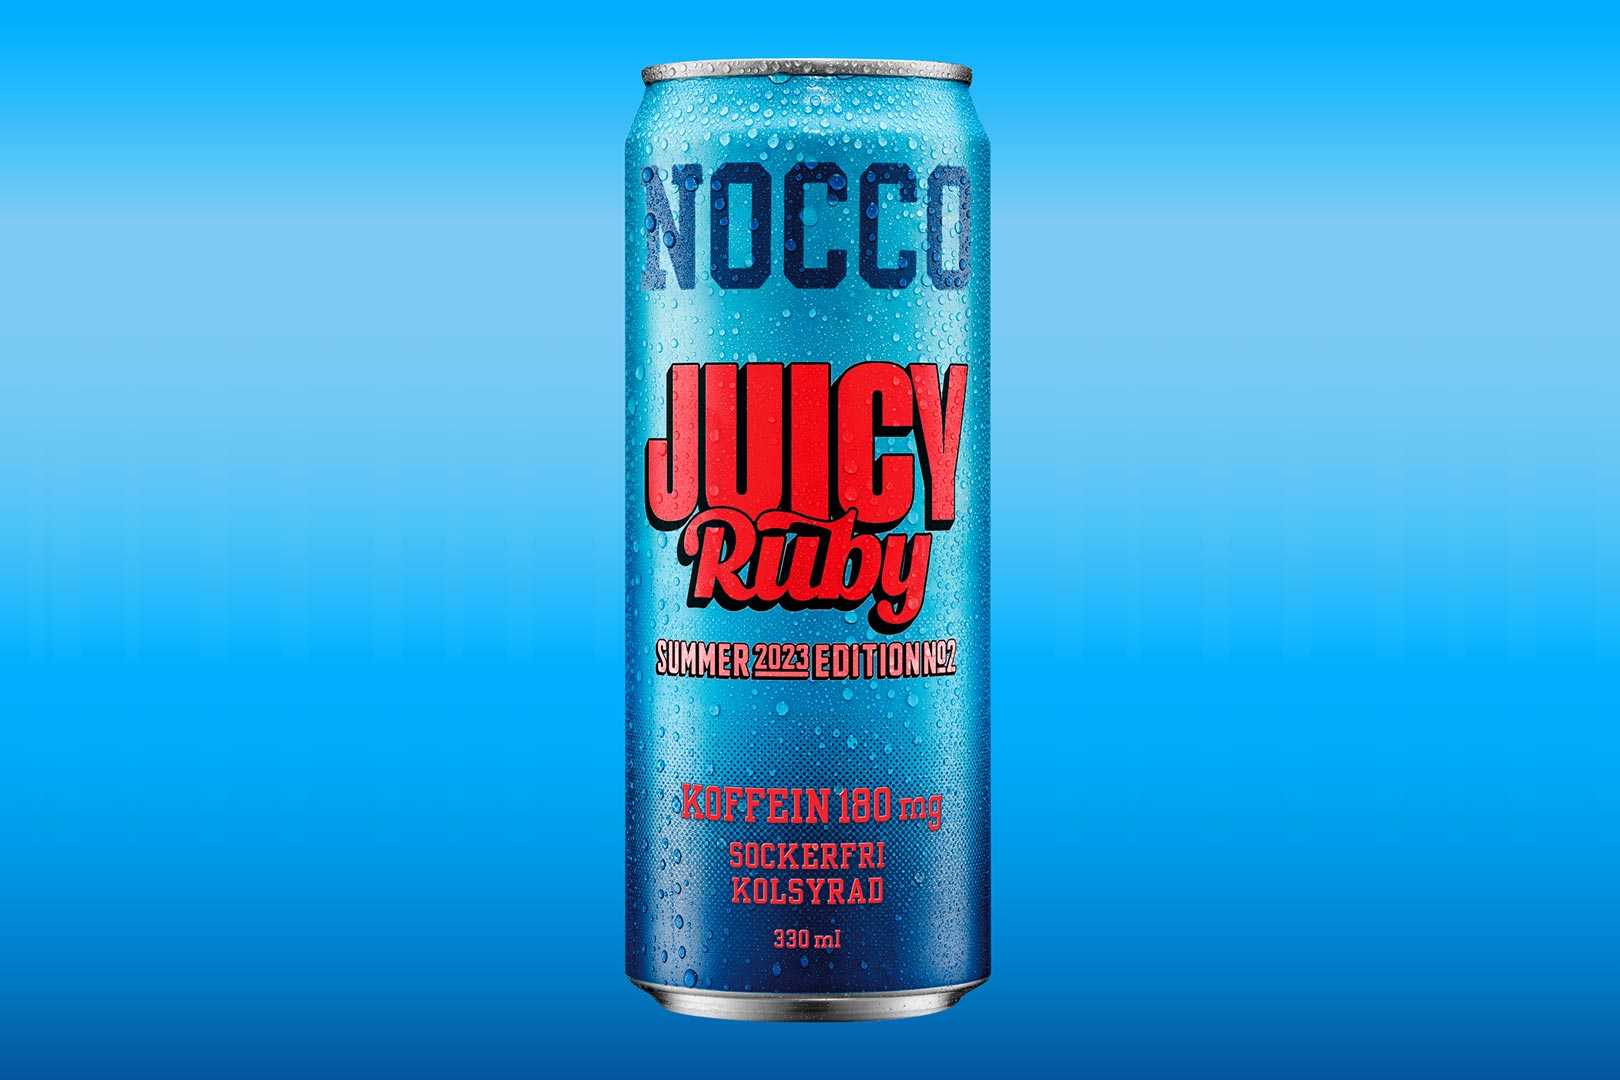 Nocco Juicy Ruby